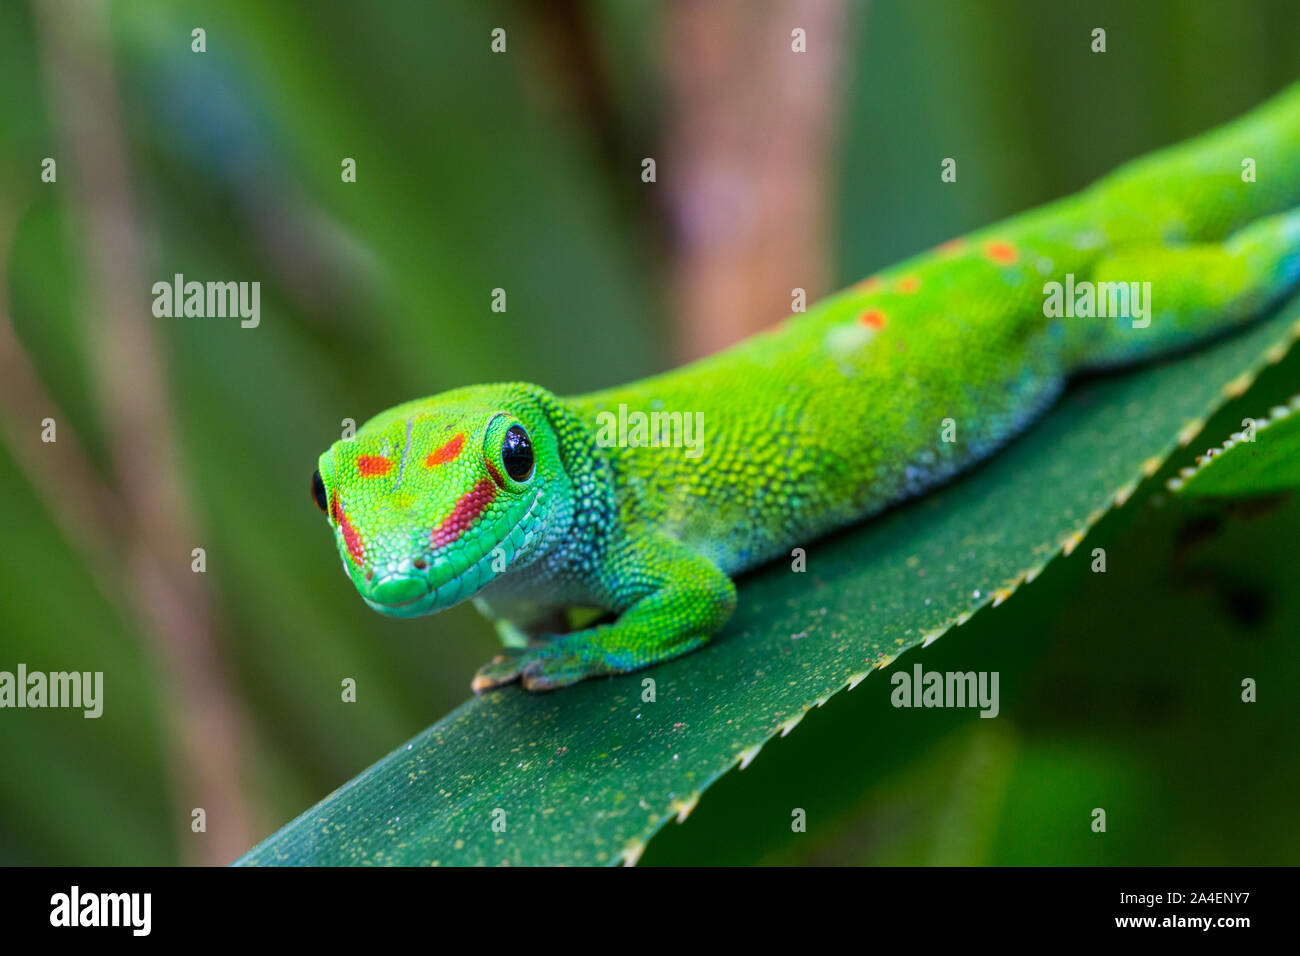 Close-up géant Madagascar naturel jour gecko (phelsuma grandis) sur feuille verte Banque D'Images